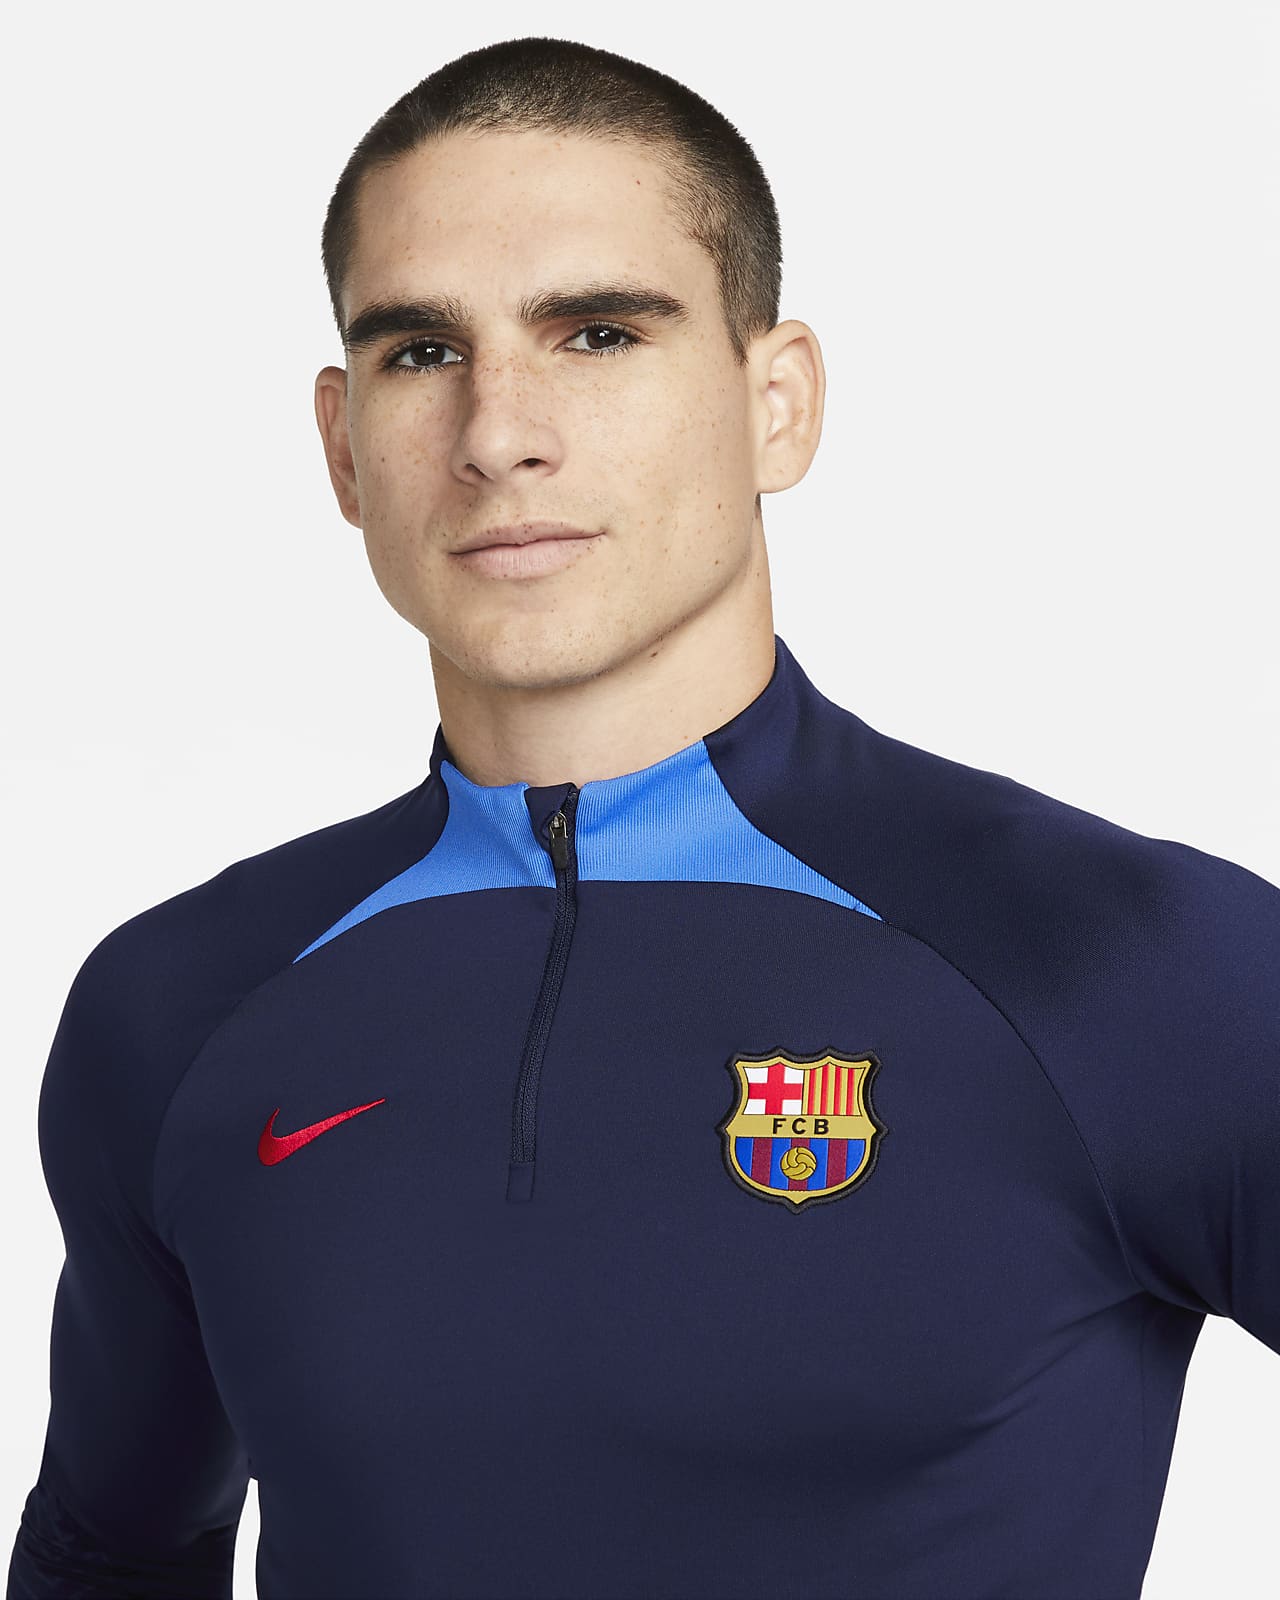 administración Lejos bañera FC Barcelona Strike Camiseta de entrenamiento de fútbol Nike Dri-FIT -  Hombre. Nike ES